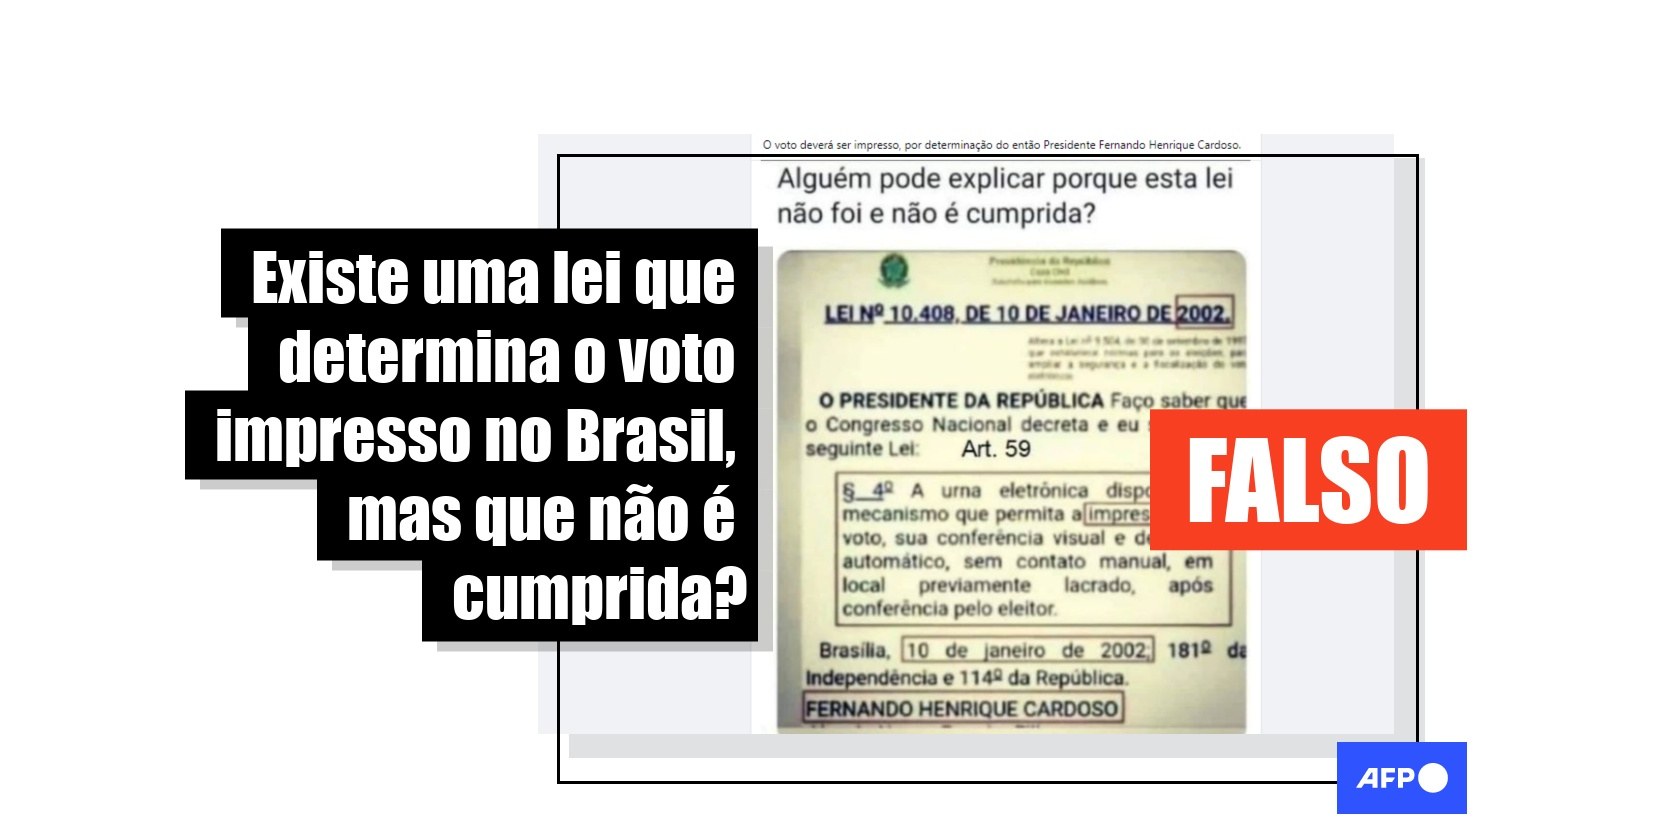 Se eu for eleito, prometo criar uma lei que proíba etiquetas que rasgam mas  não saem : r/brasil